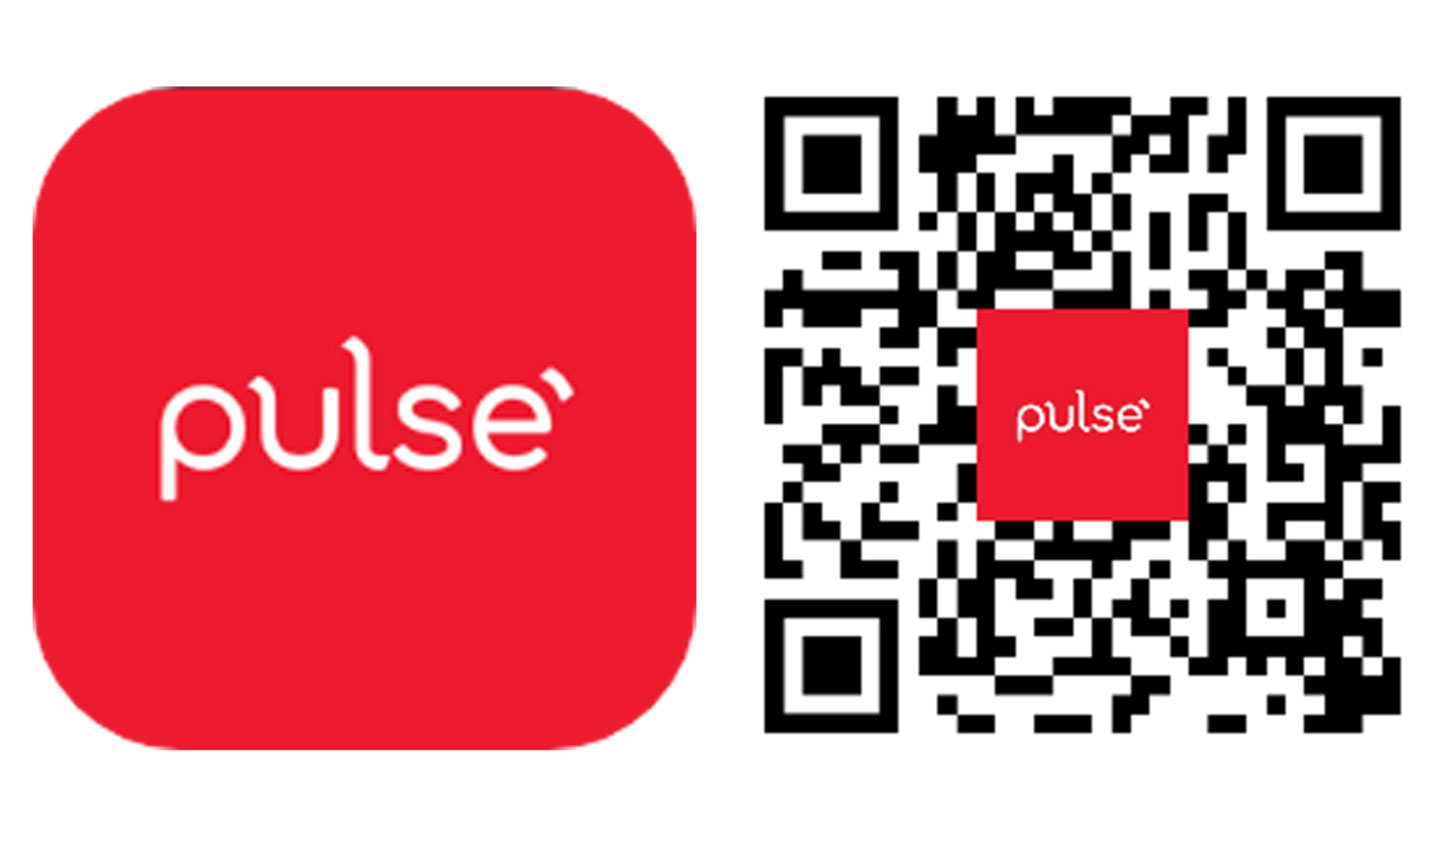 Tải ngay ứng dụng Pulse by Prudential và mua sản phẩm PRU - Vui Sống dễ dàng chỉ trong 3 phút.